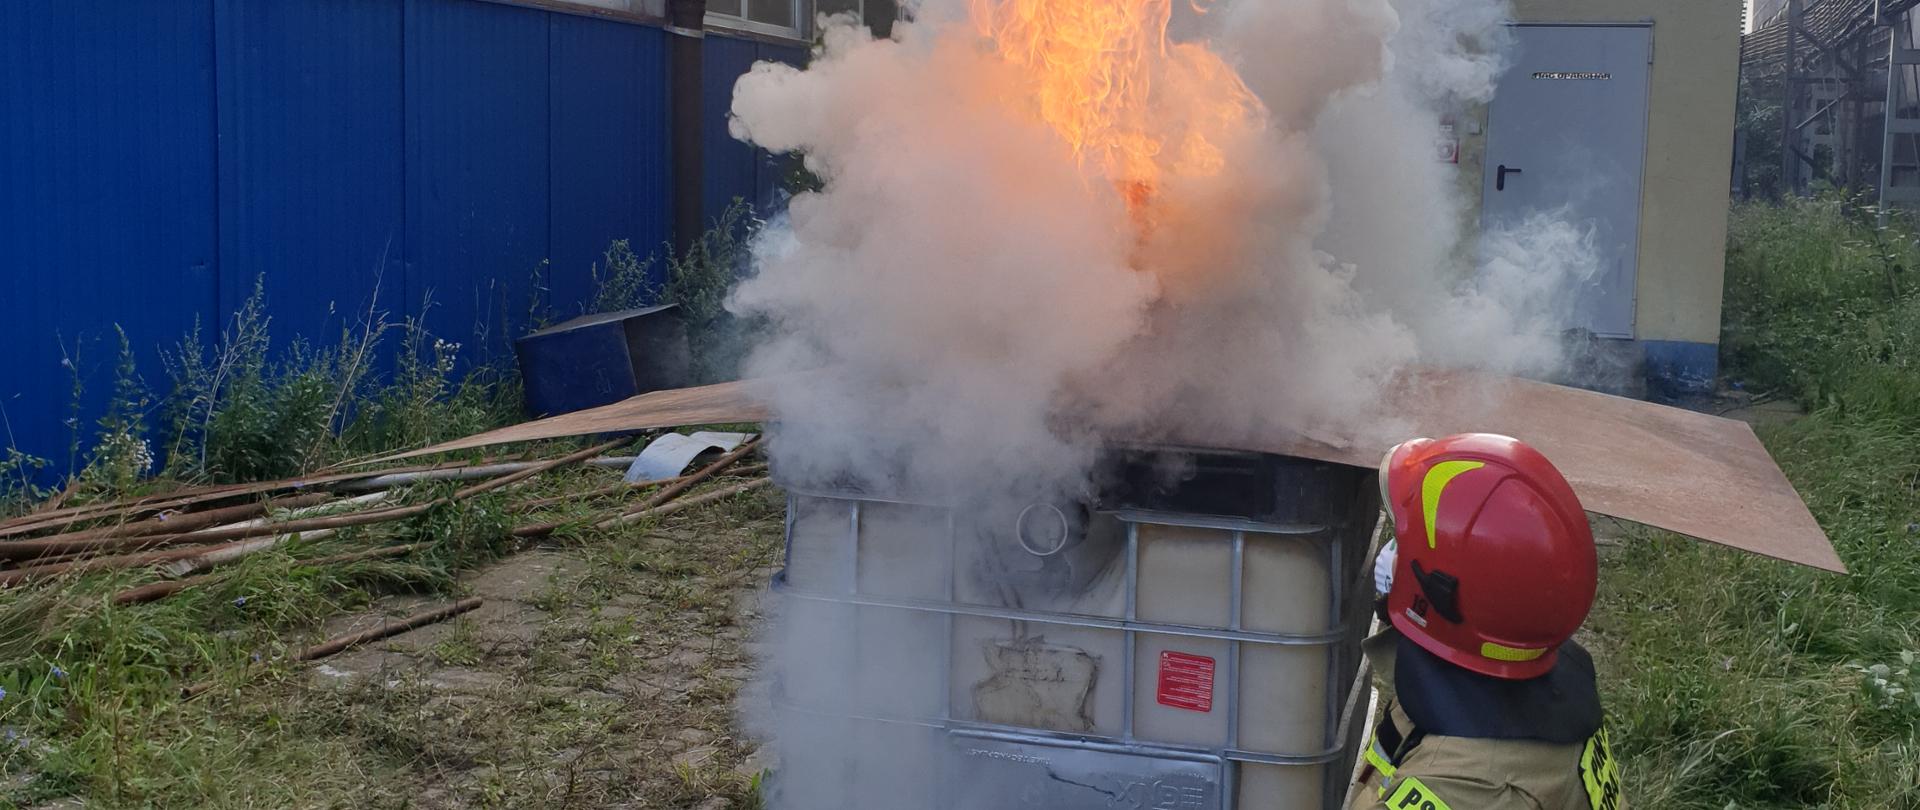 Strażak przedstawia zjawisko zapalenia gazów pożarowych na specjalnie do tego przygotowanym domku. 